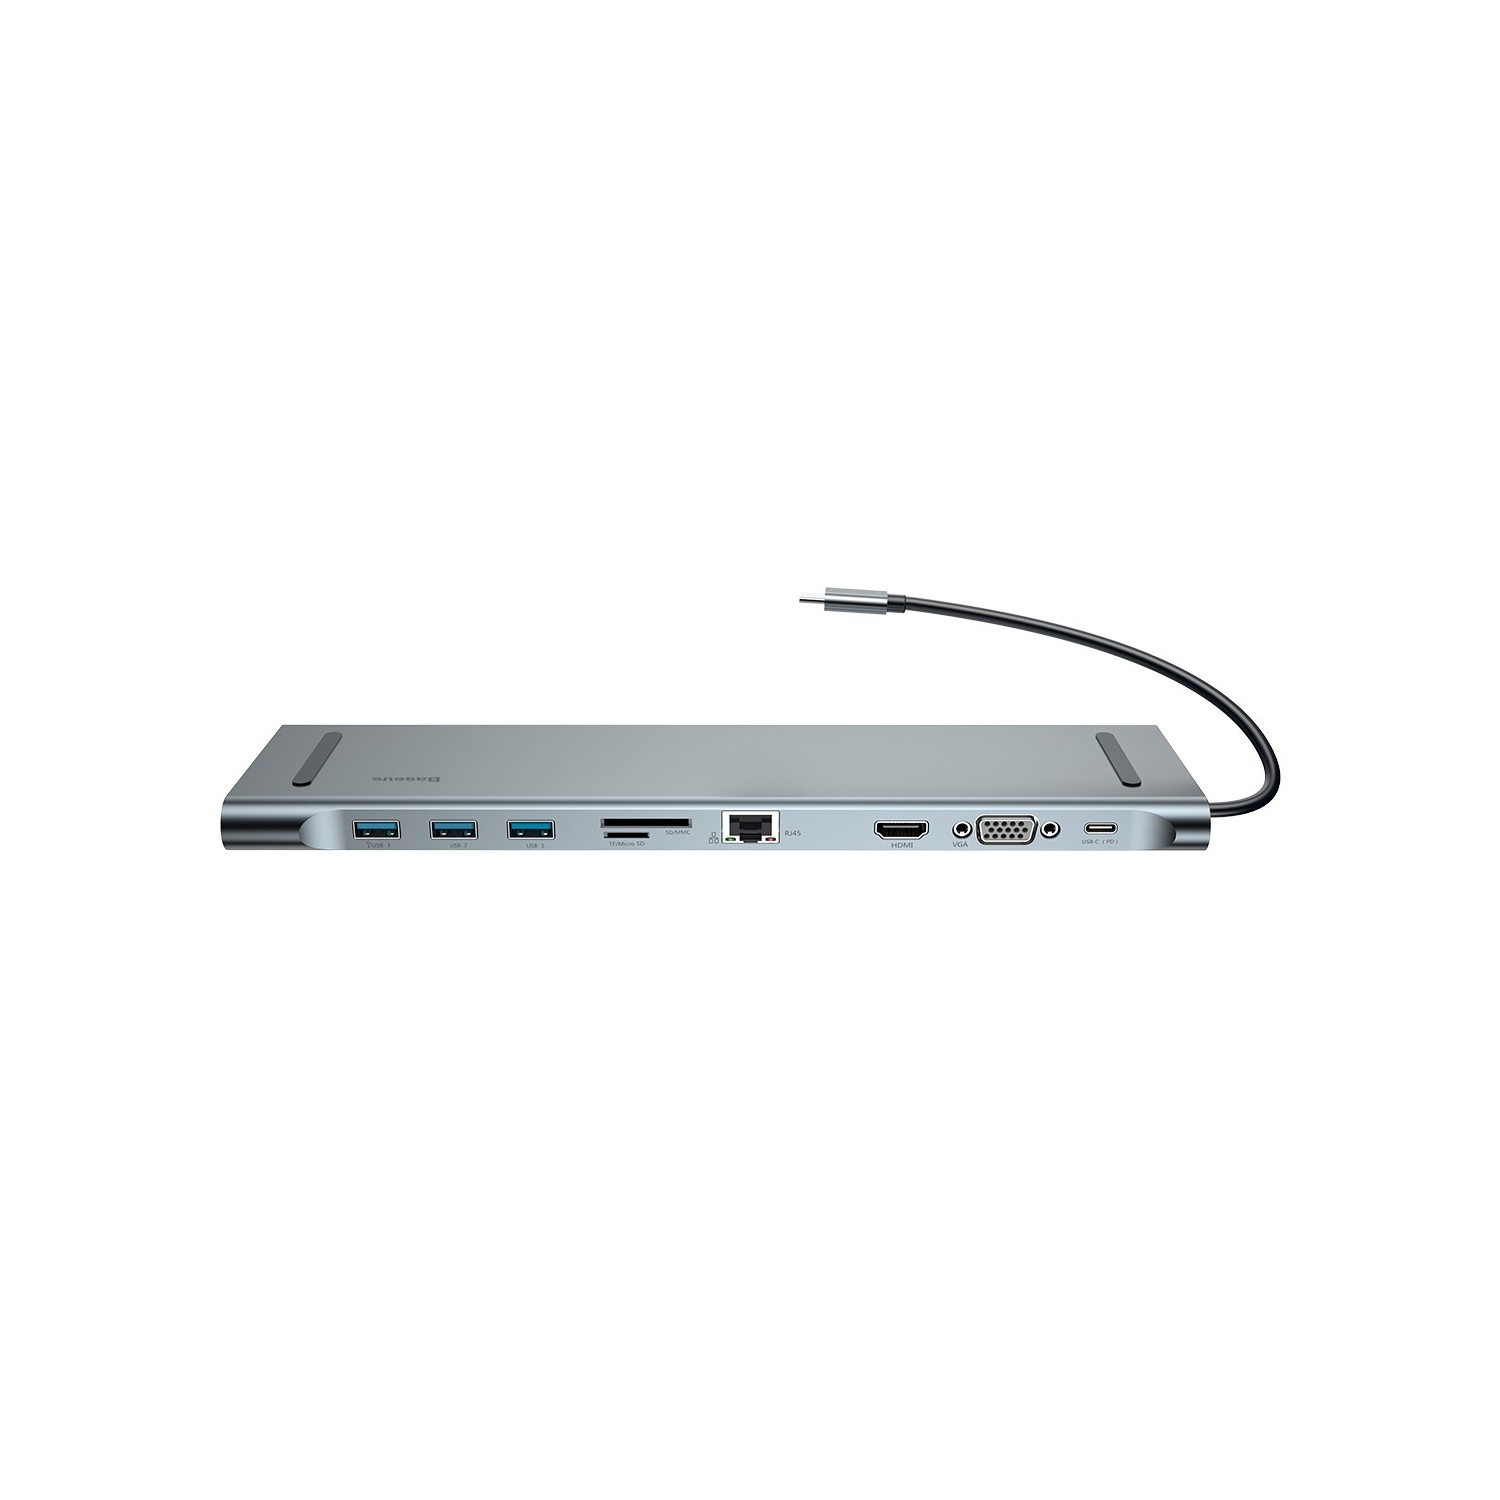 ADAPTADOR HUB USB-C 10 EN 1 GRIS ESPACIAL BASEUS